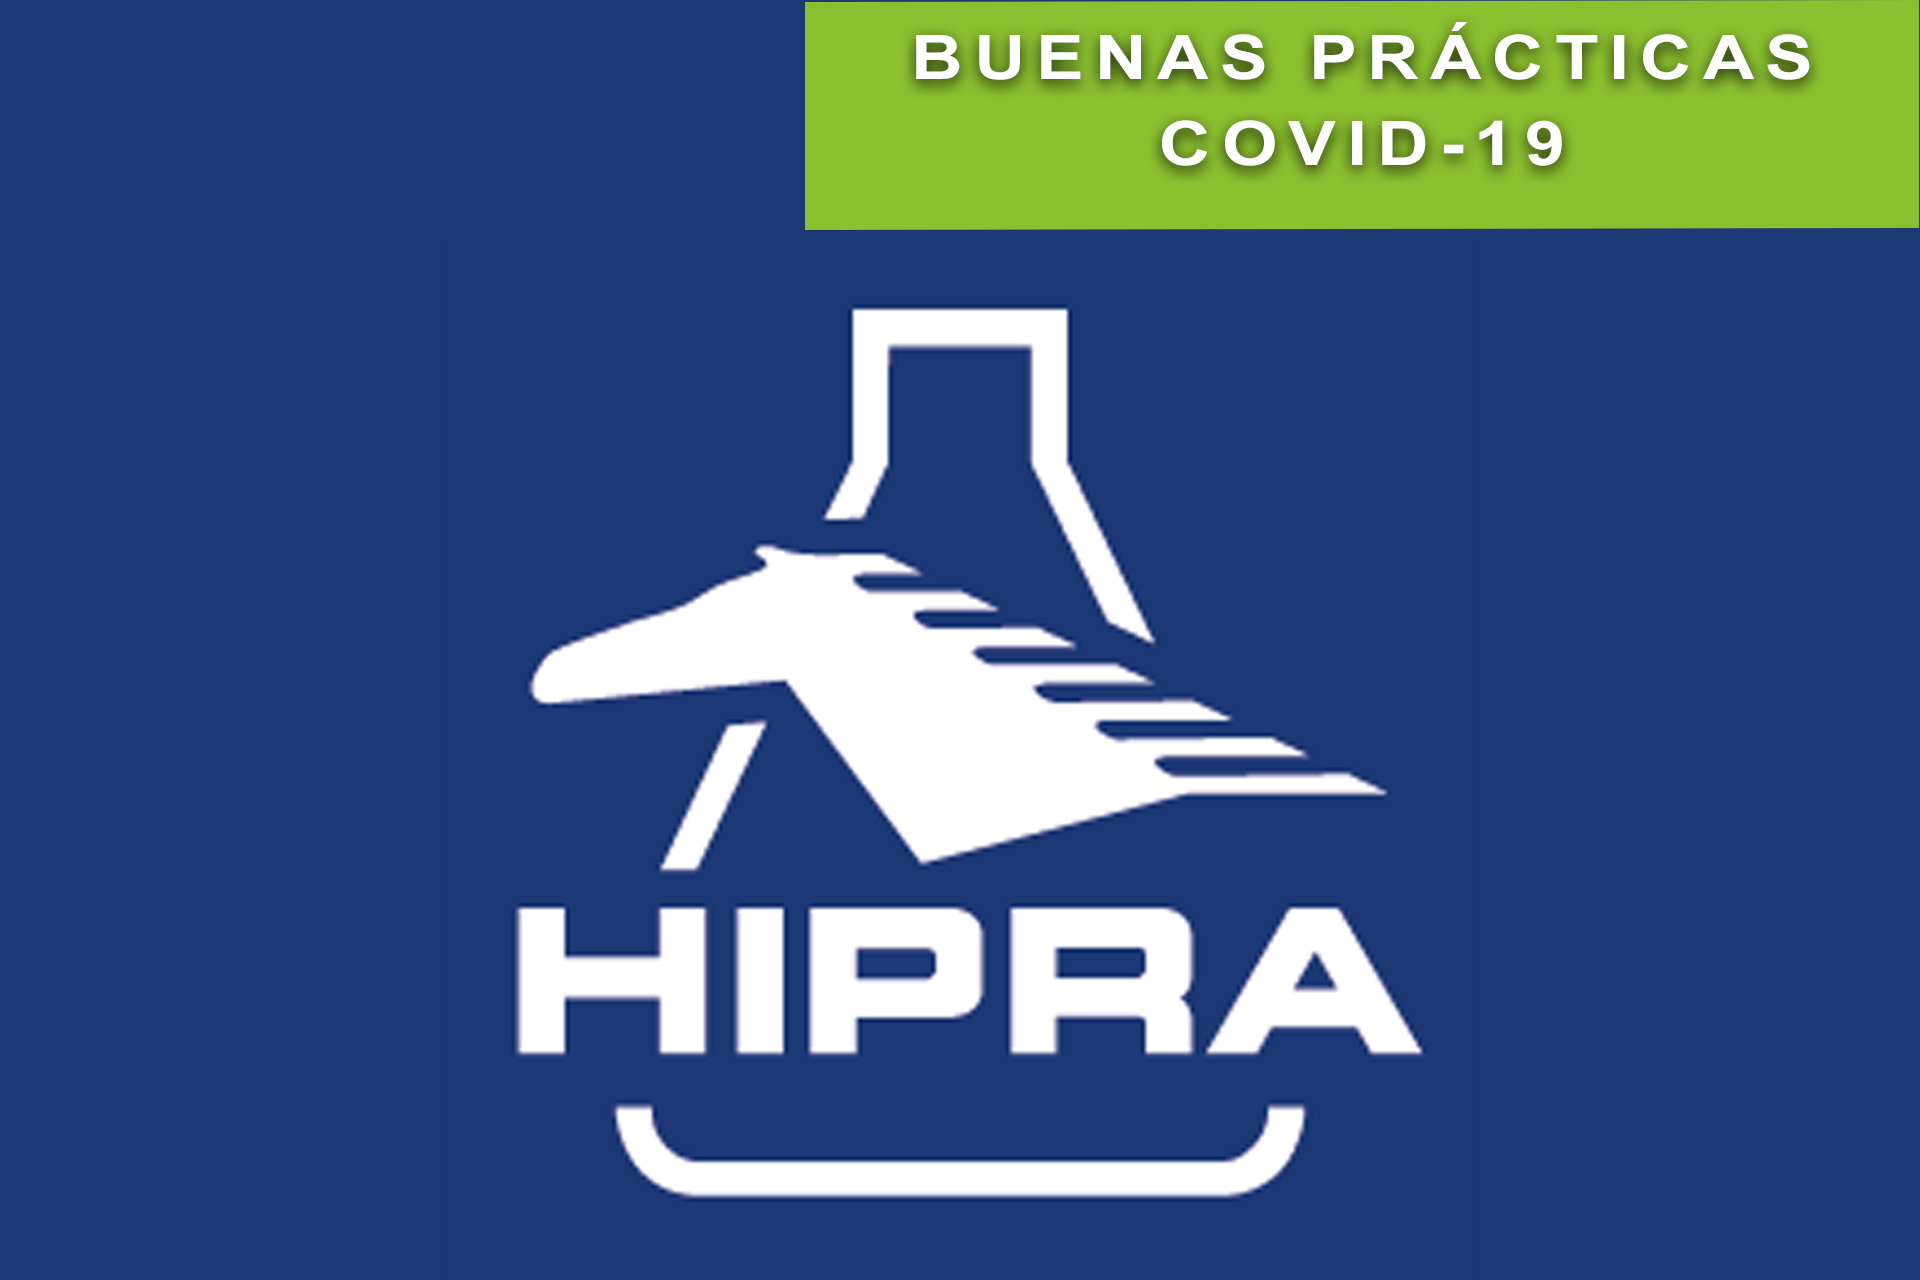 La compañía de Salud Animal HIPRA pone a disposición de las autoridades sanitarias instalaciones y equipos de biotecnología